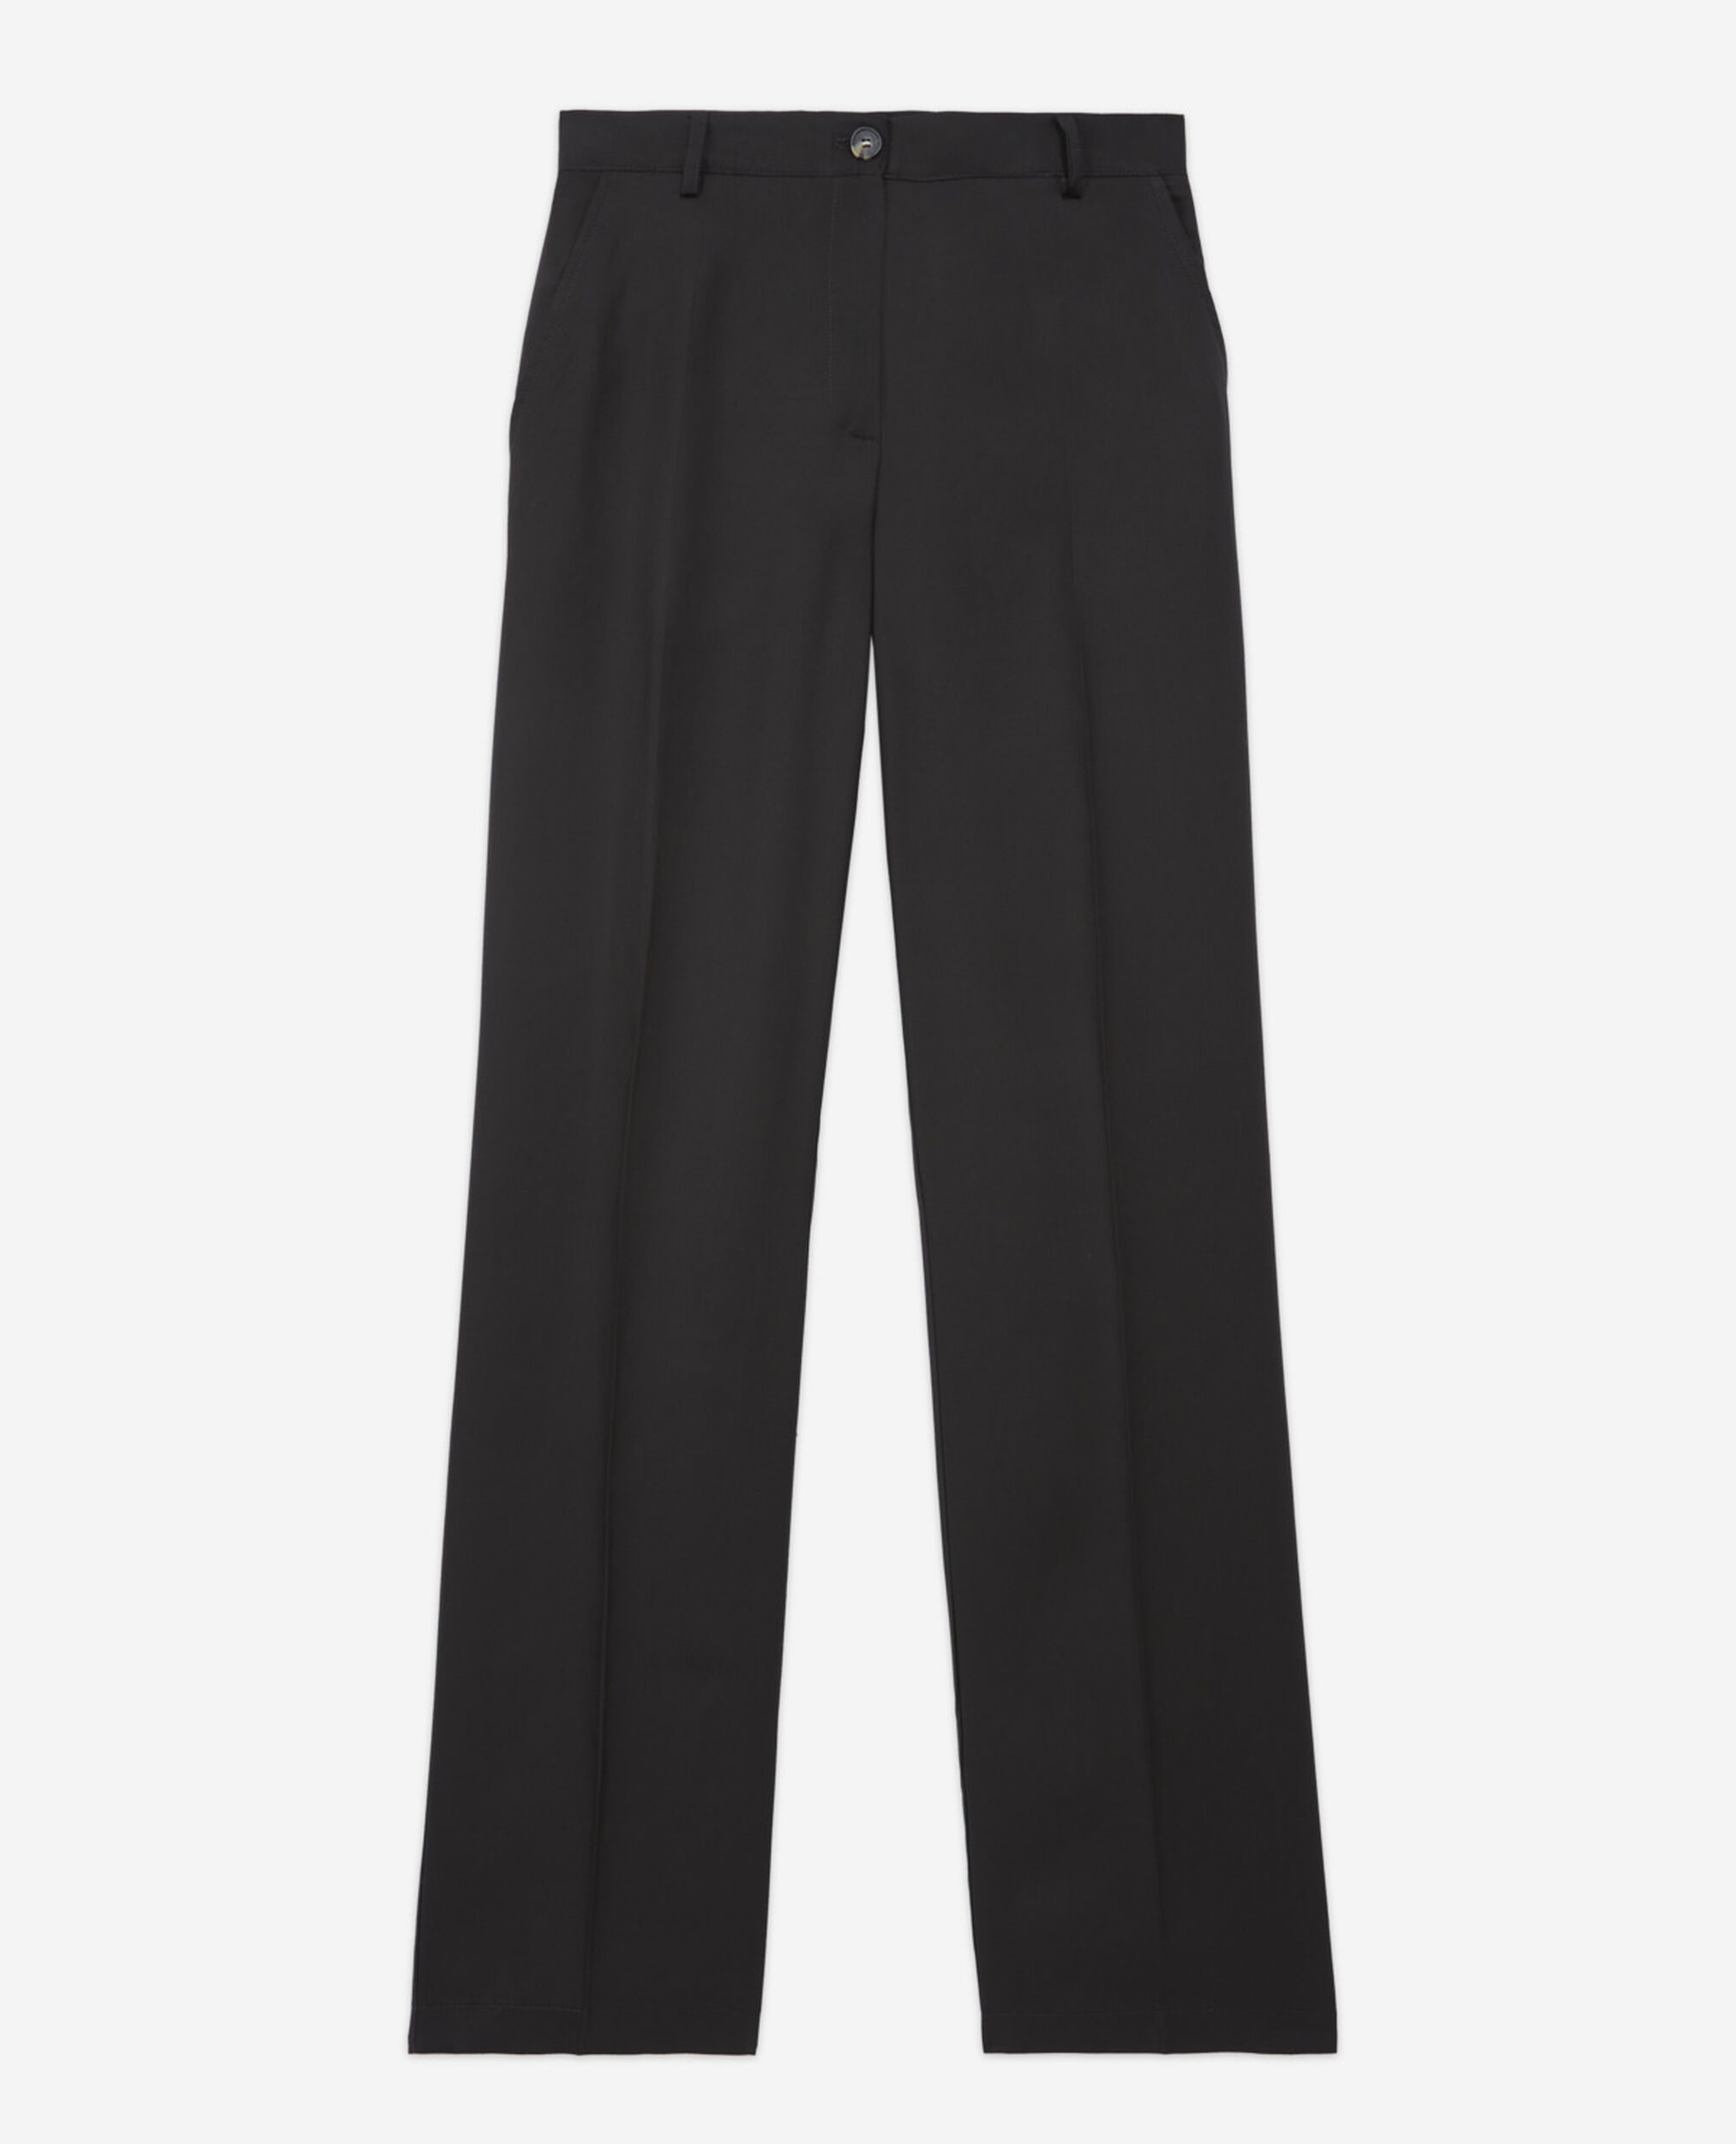 Pantalon noir tencel style militaire, BLACK, hi-res image number null